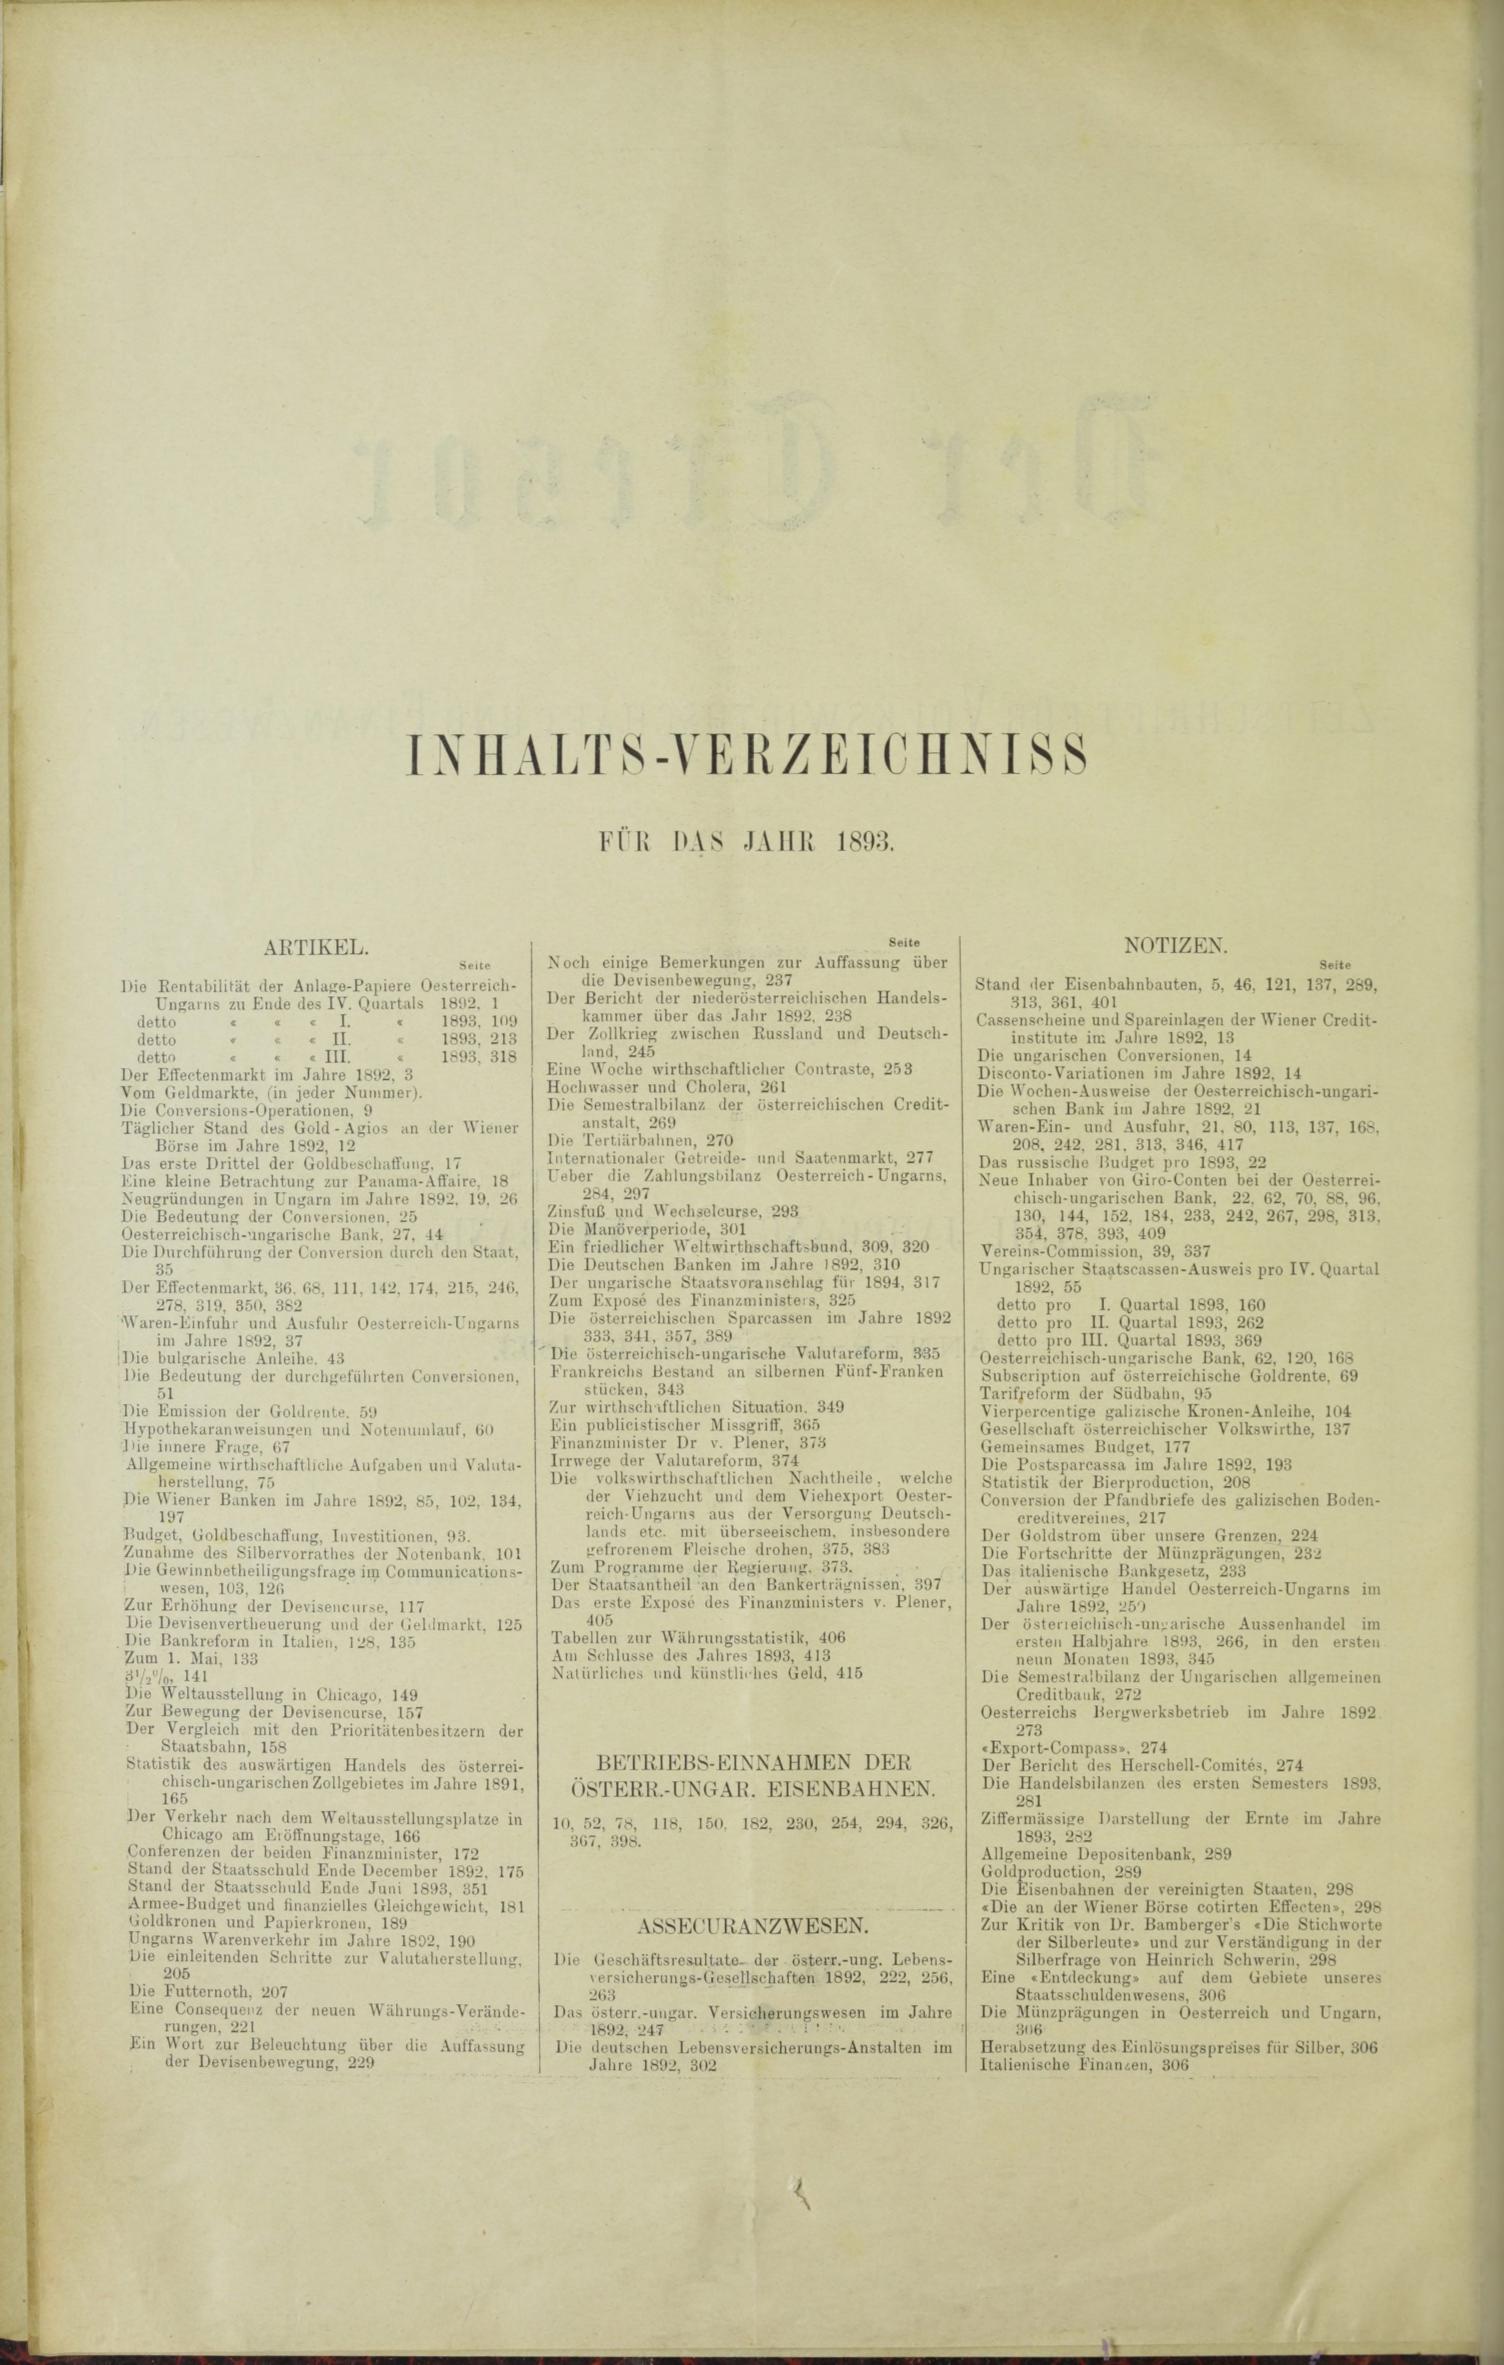 Der Tresor 16.02.1893 - Seite 10